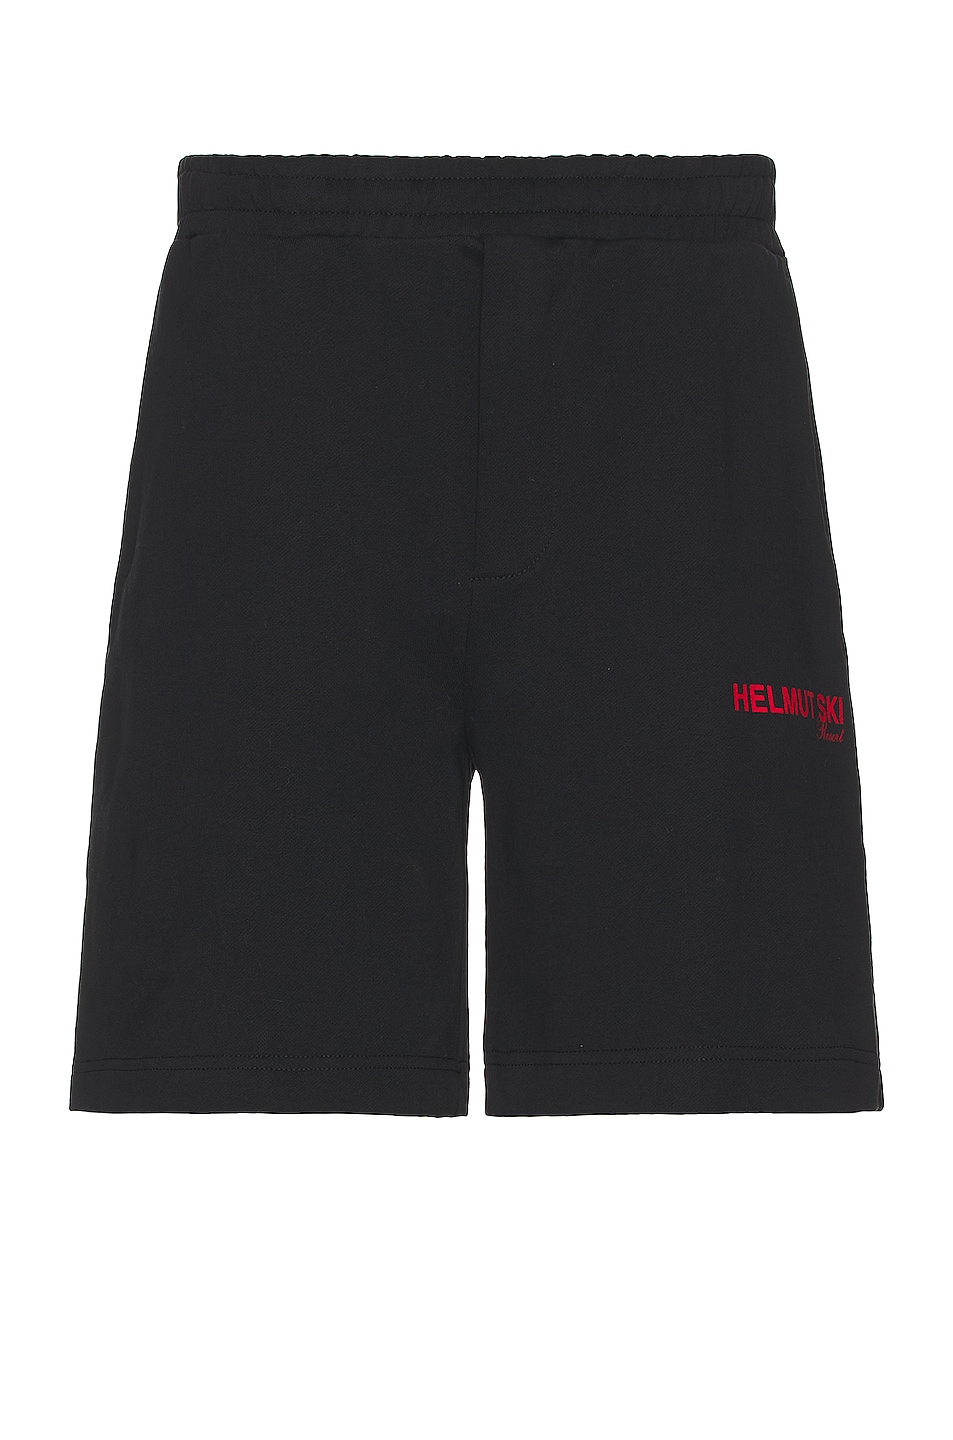 Image 1 of Helmut Lang Ski Shorts in Black